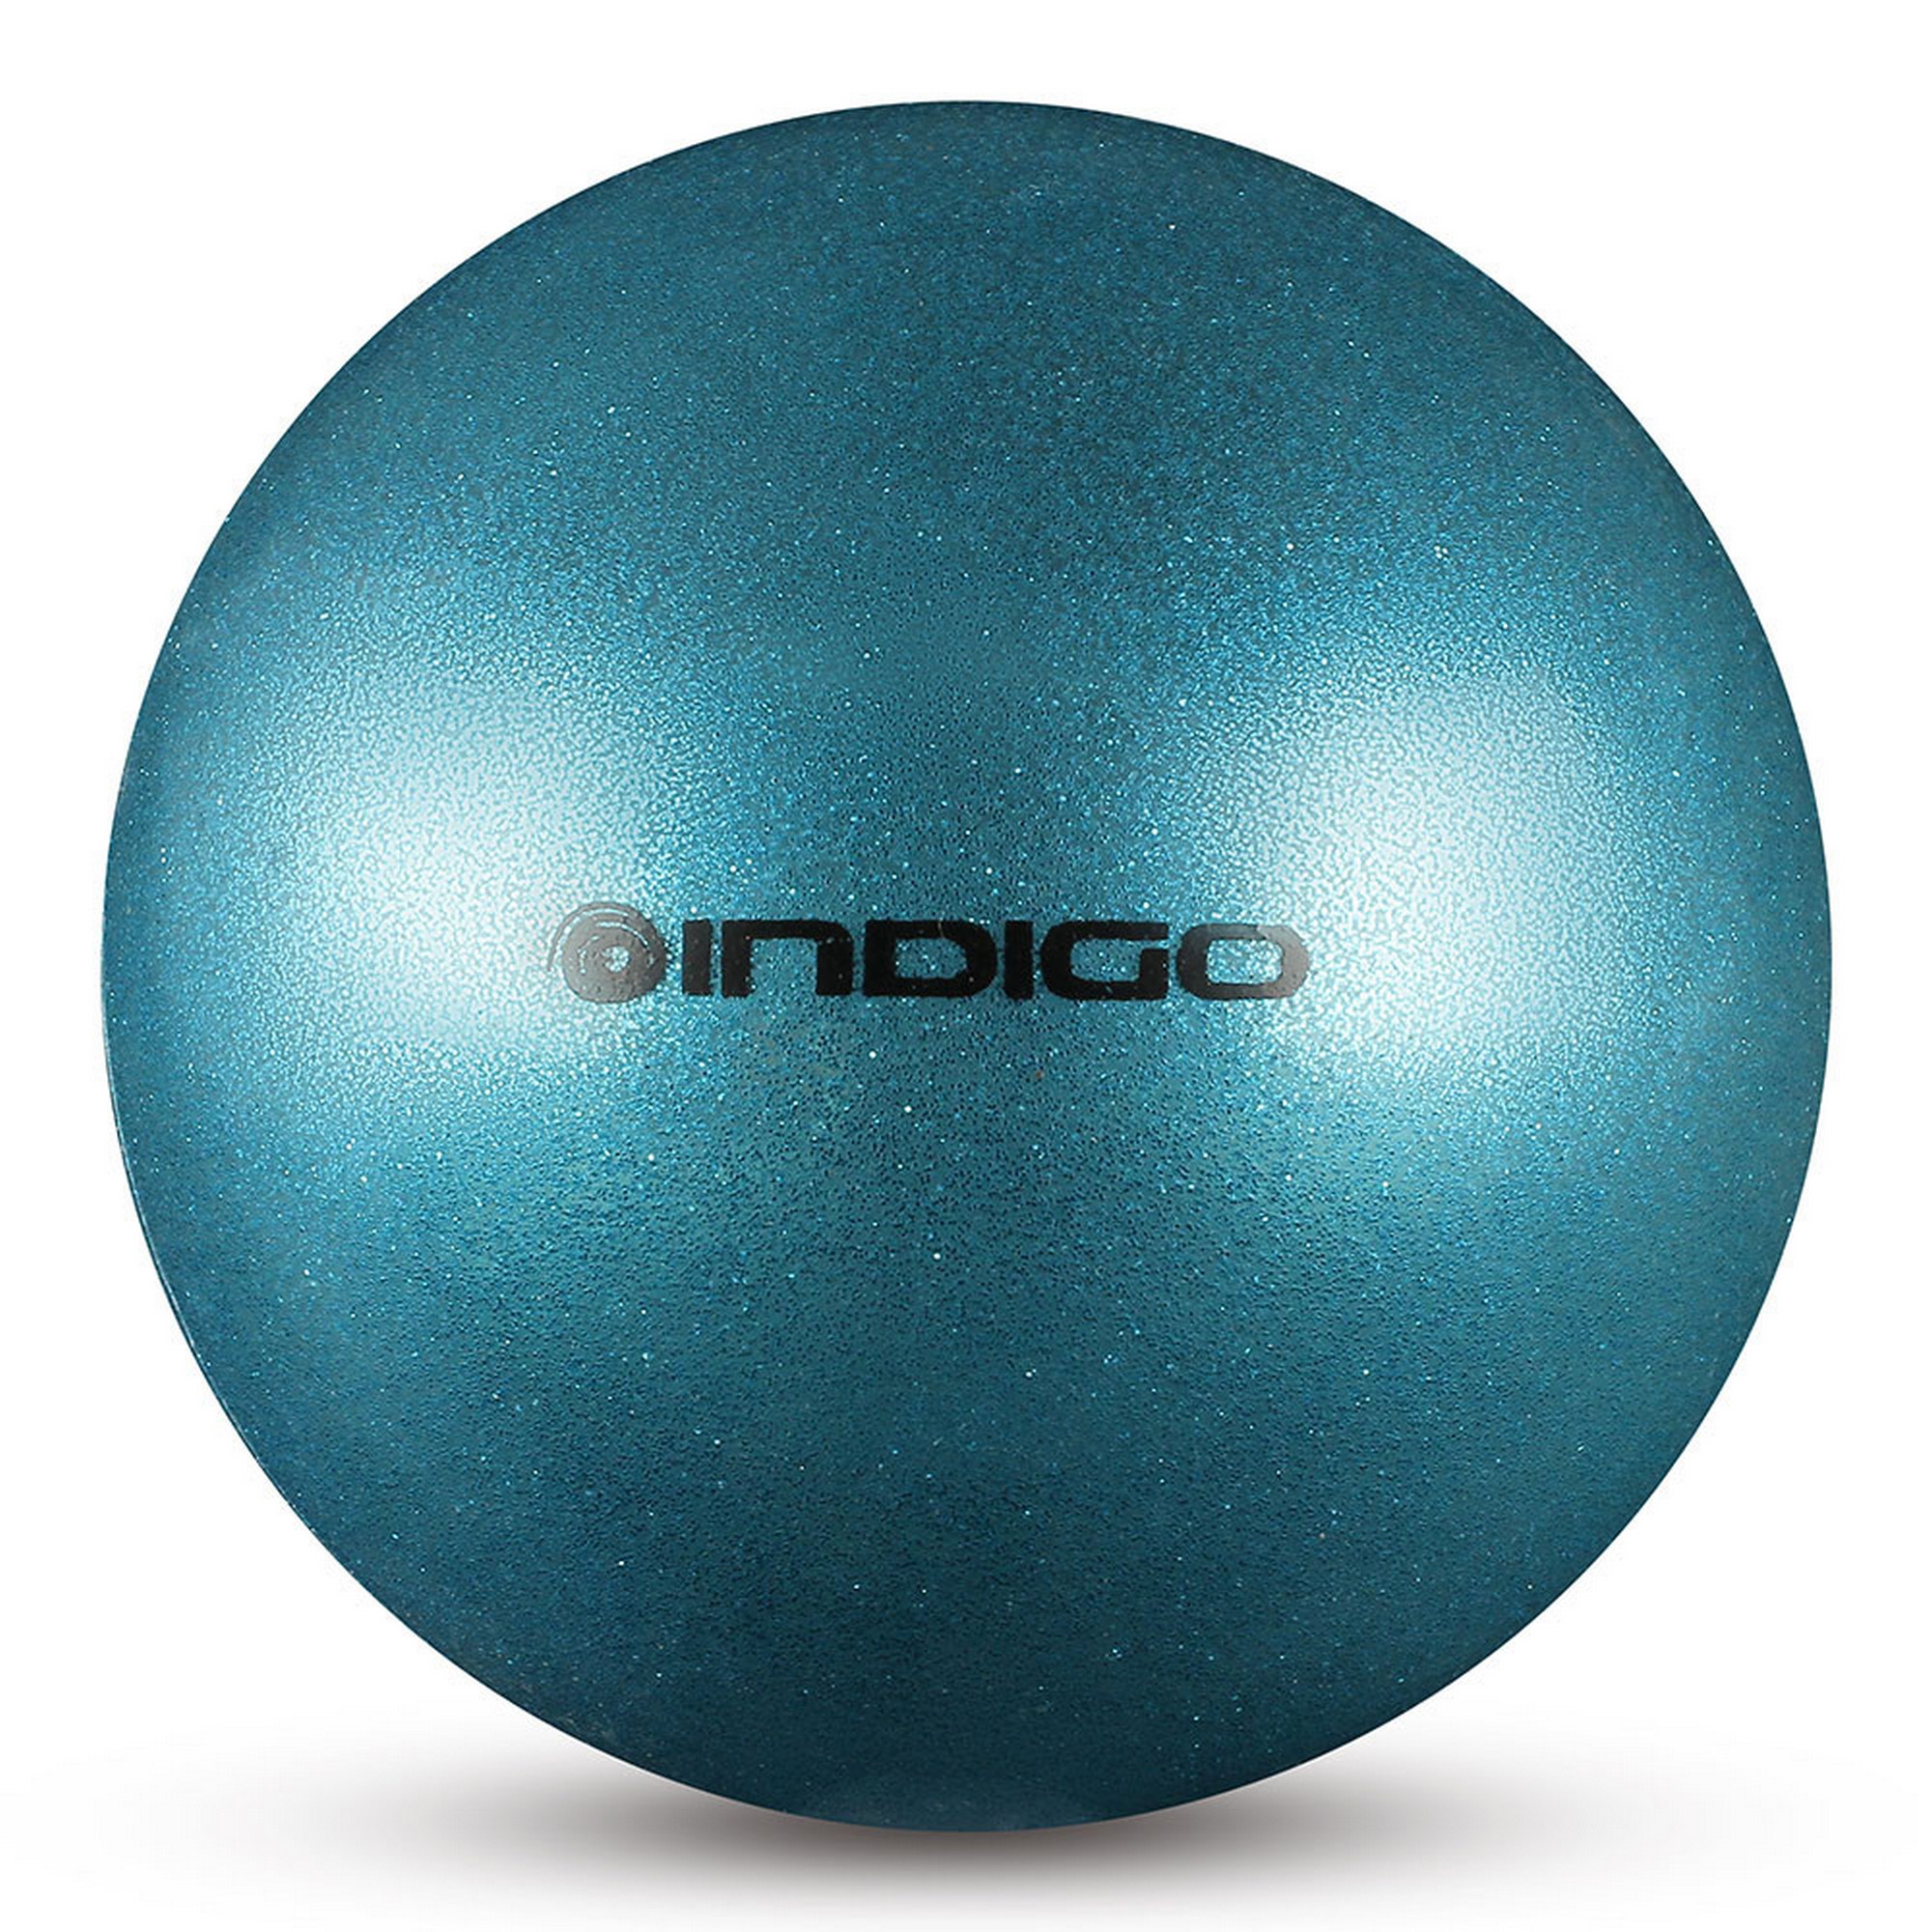 Купить Мяч для художественной гимнастики d15см Indigo ПВХ IN119-LB голубой металлик с блестками,